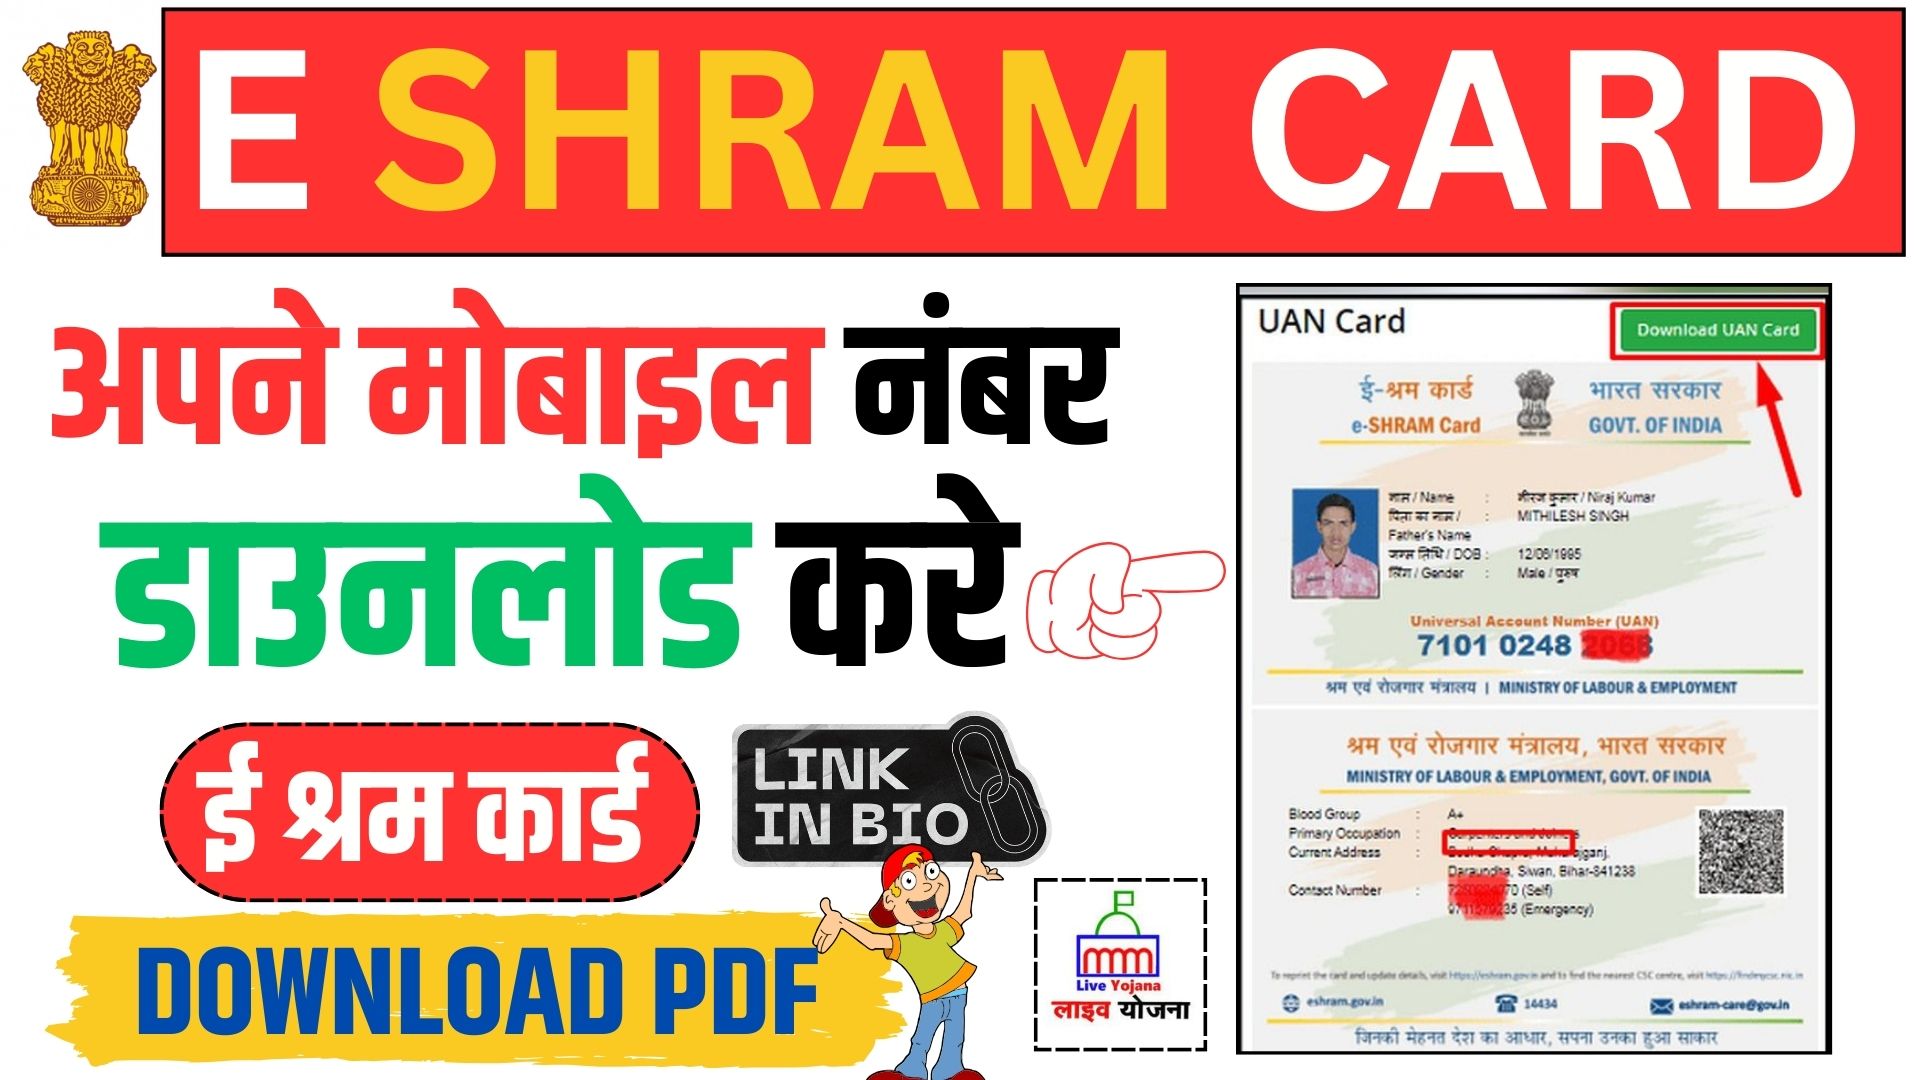 E Shram Card Download PDF By Mobile Number E Shram Cad Download E Shram Crd PDF E Shram कार्ड डाउनलोड E Shram Card